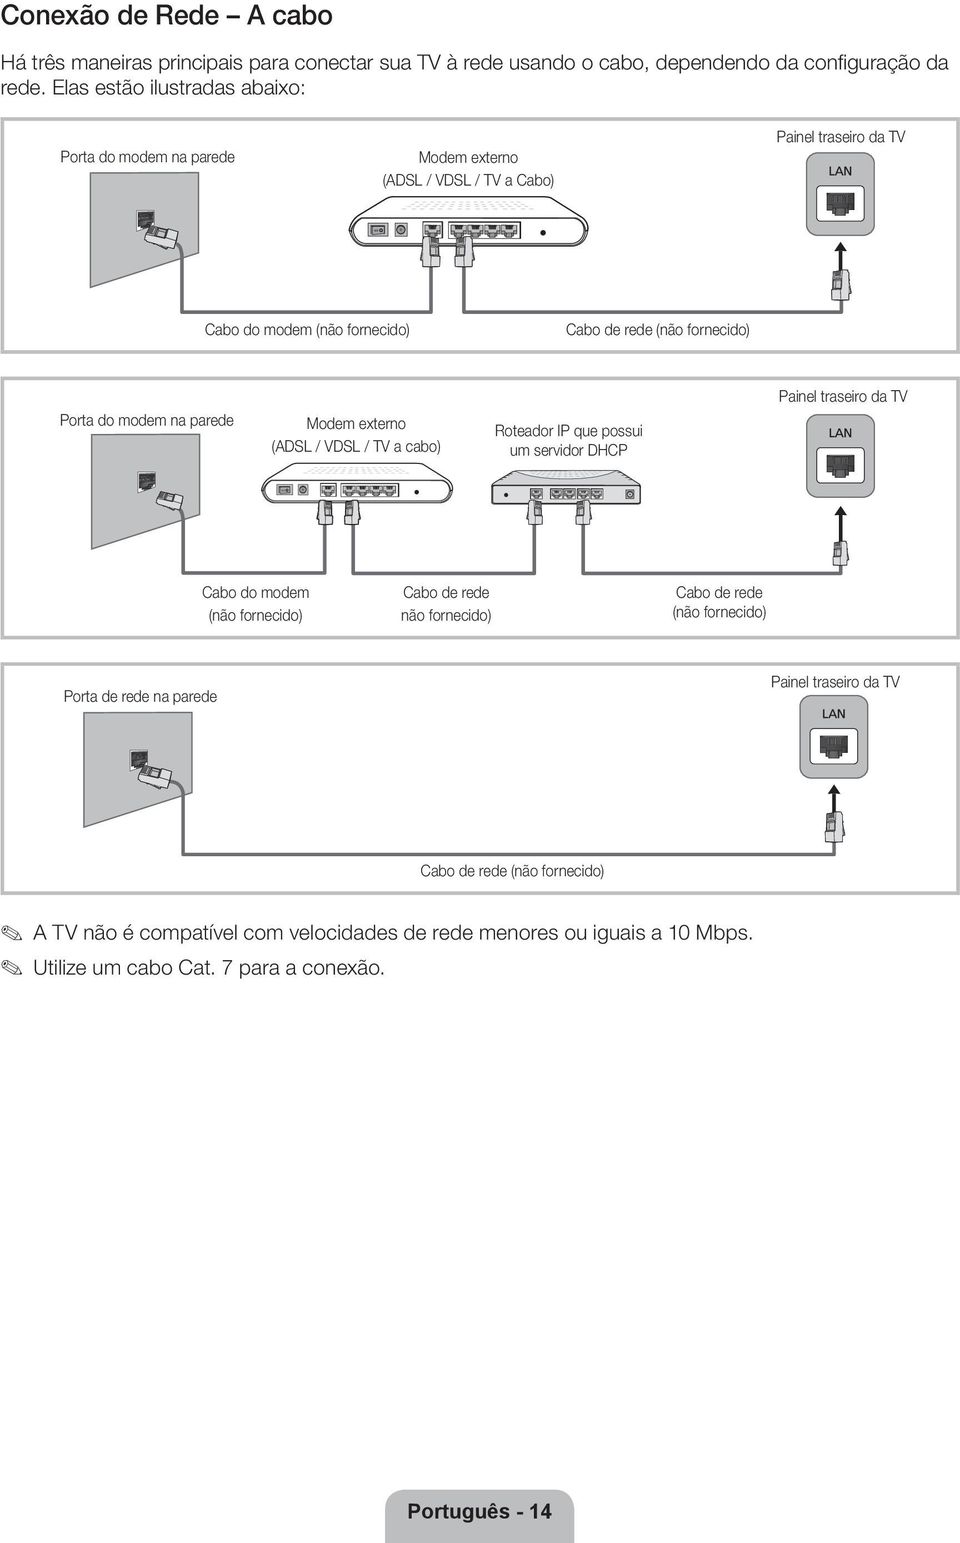 Porta do modem na parede Modem externo (ADSL / VDSL / TV a cabo) Roteador IP que possui um servidor DHCP Painel traseiro da TV Cabo do modem (não fornecido) Cabo de rede não